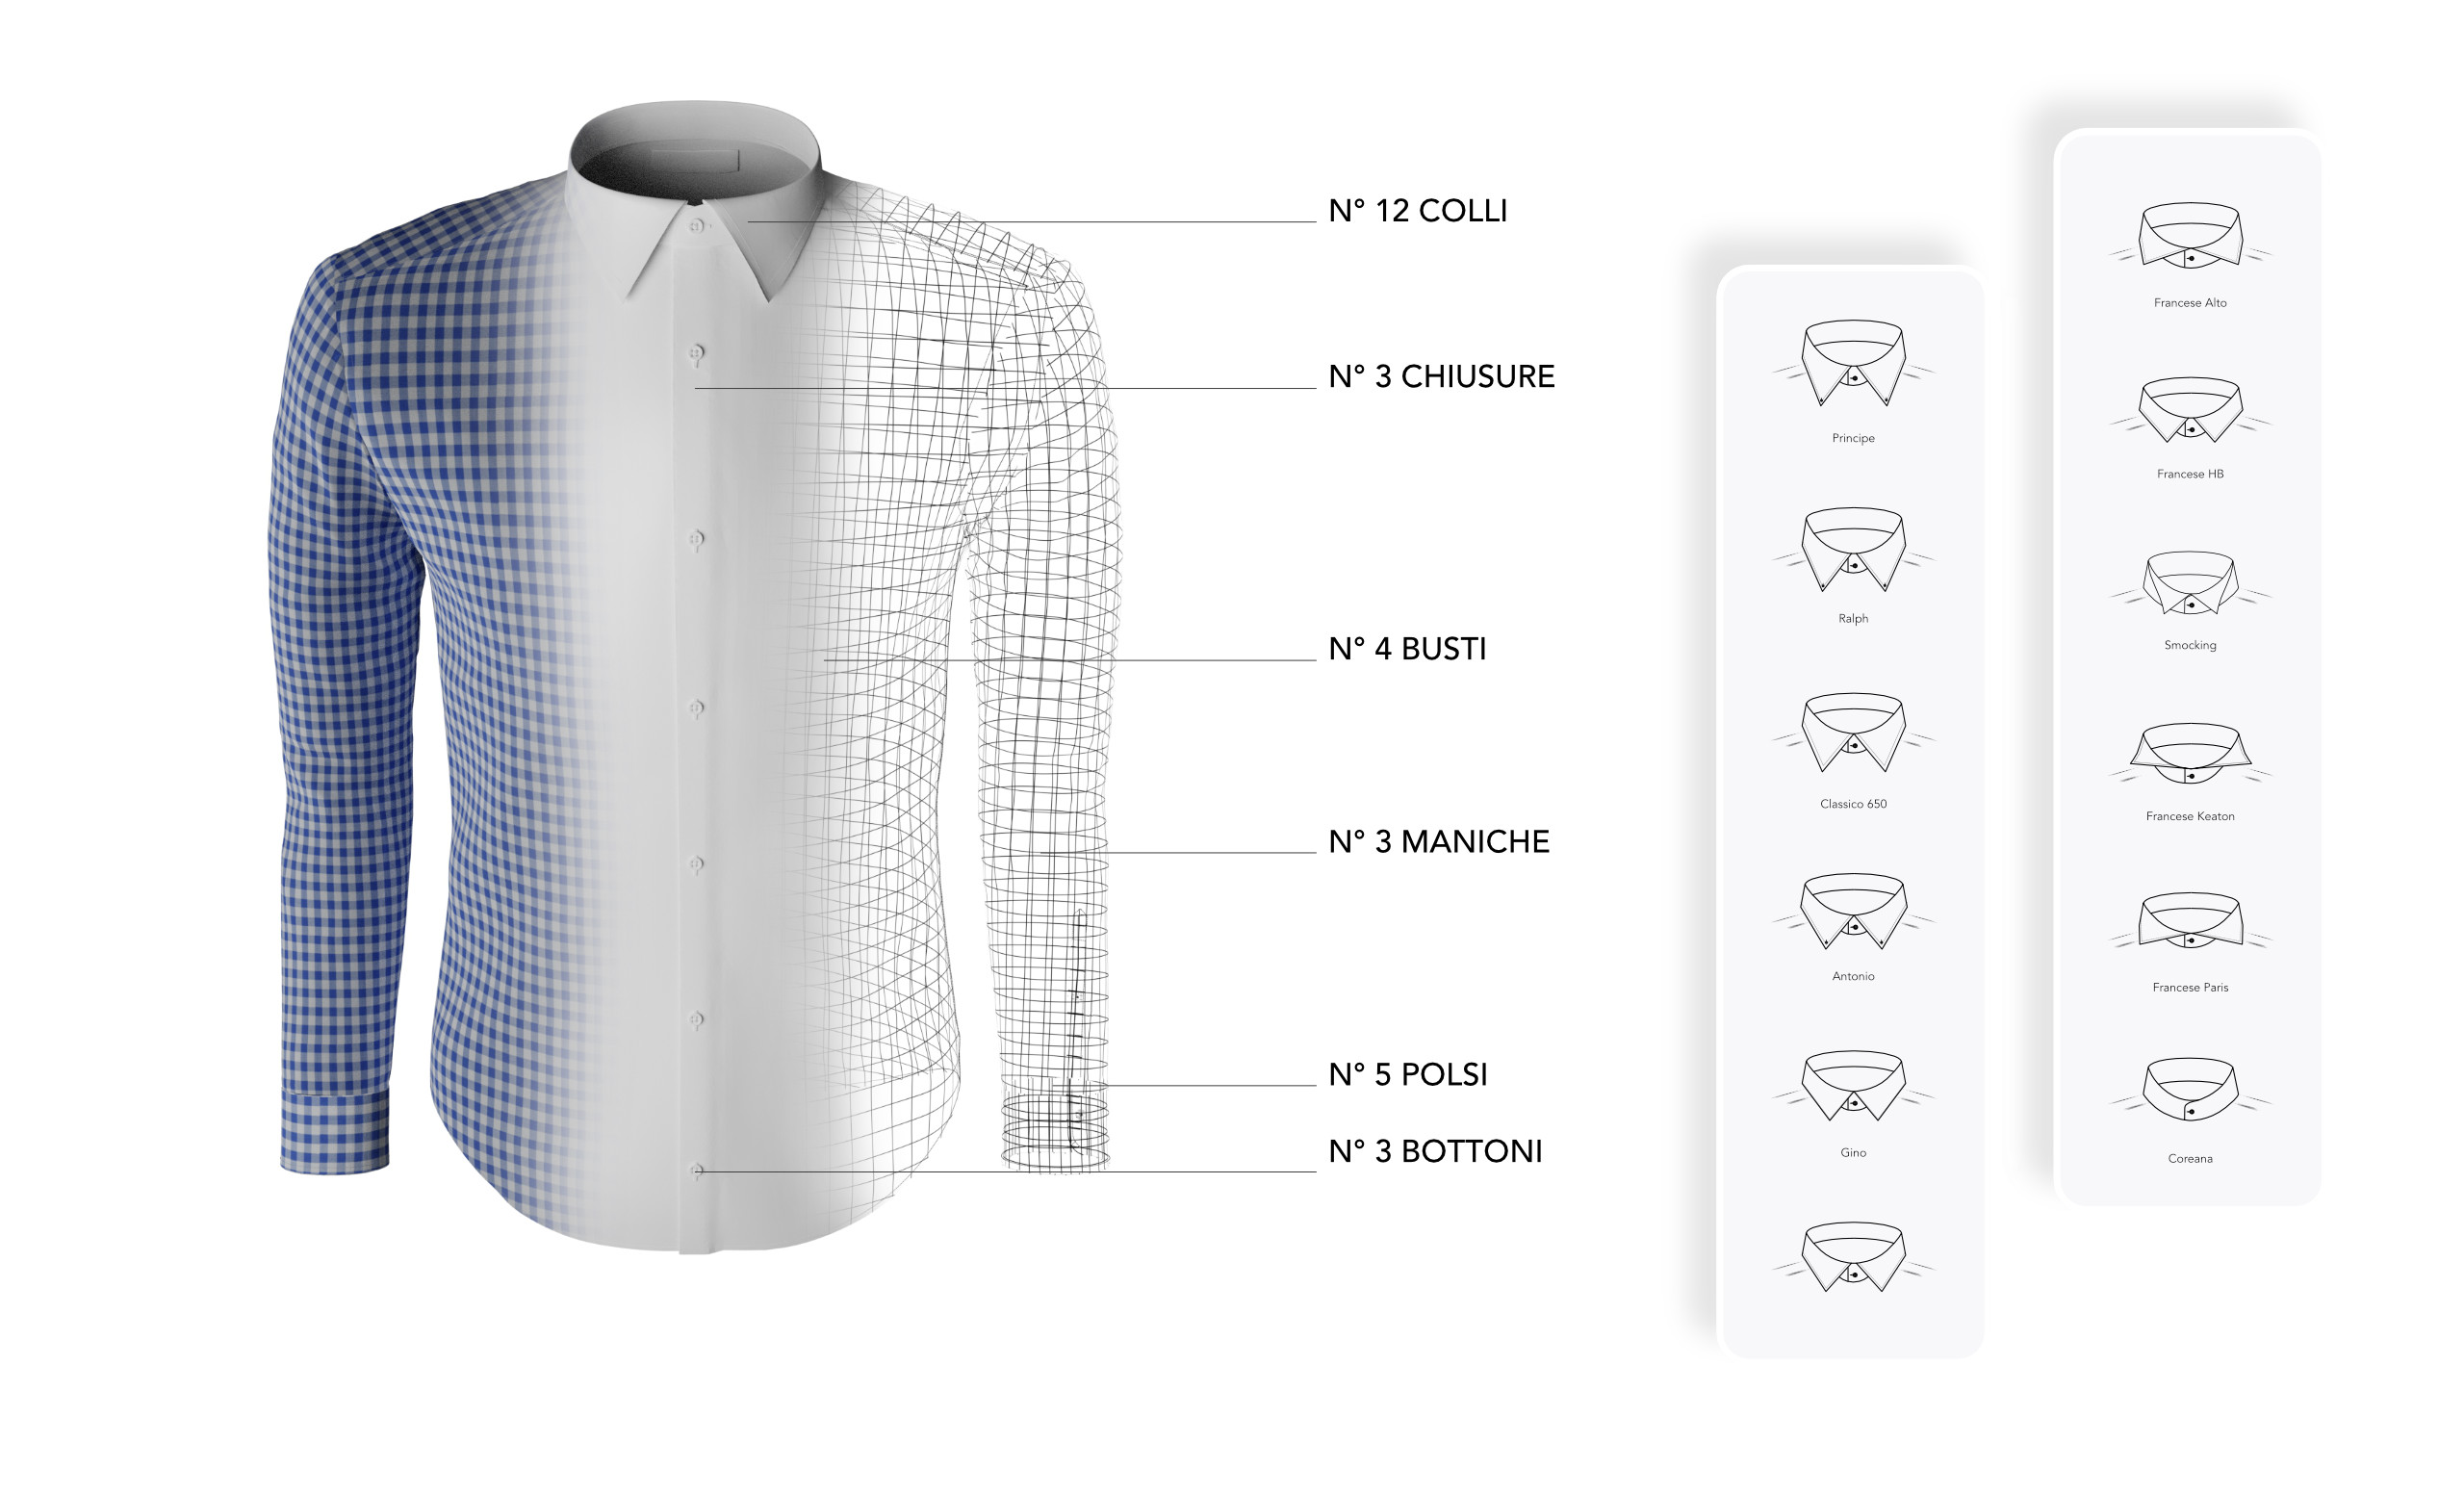 Realizzazione configuratore 3D per camicie su misura